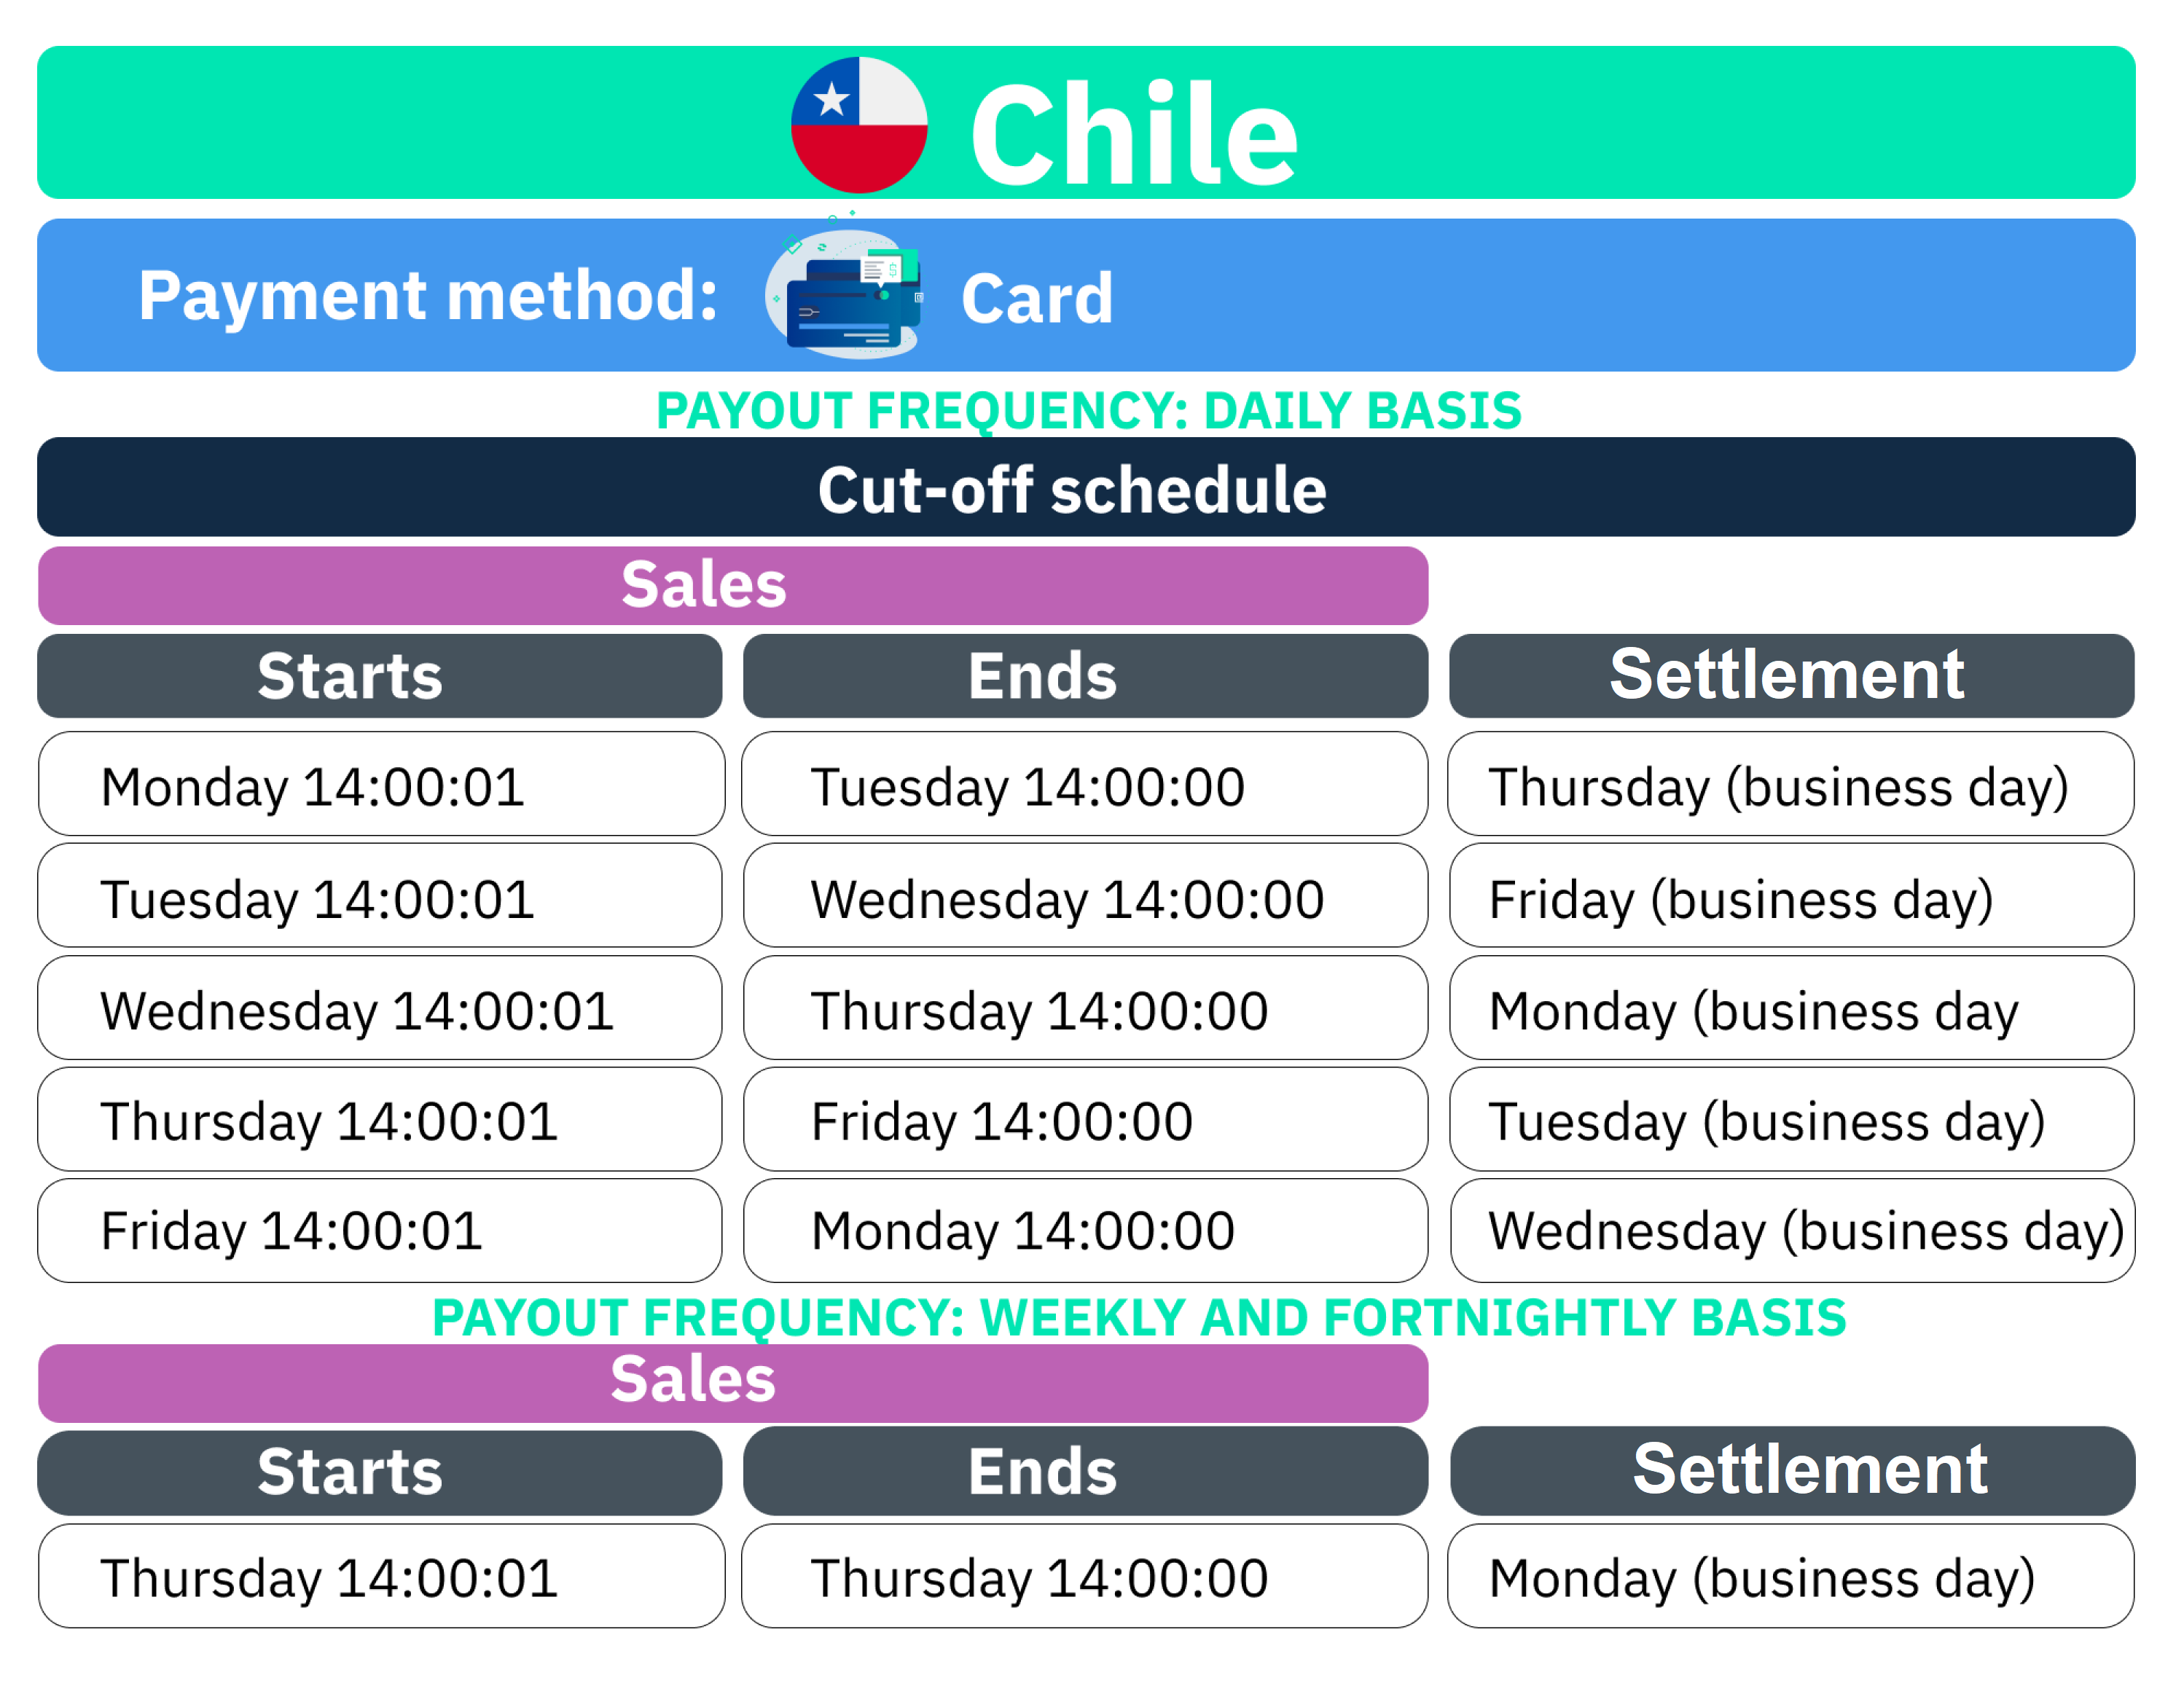 Traducción proceso de iquidación Chile - Card-final.png